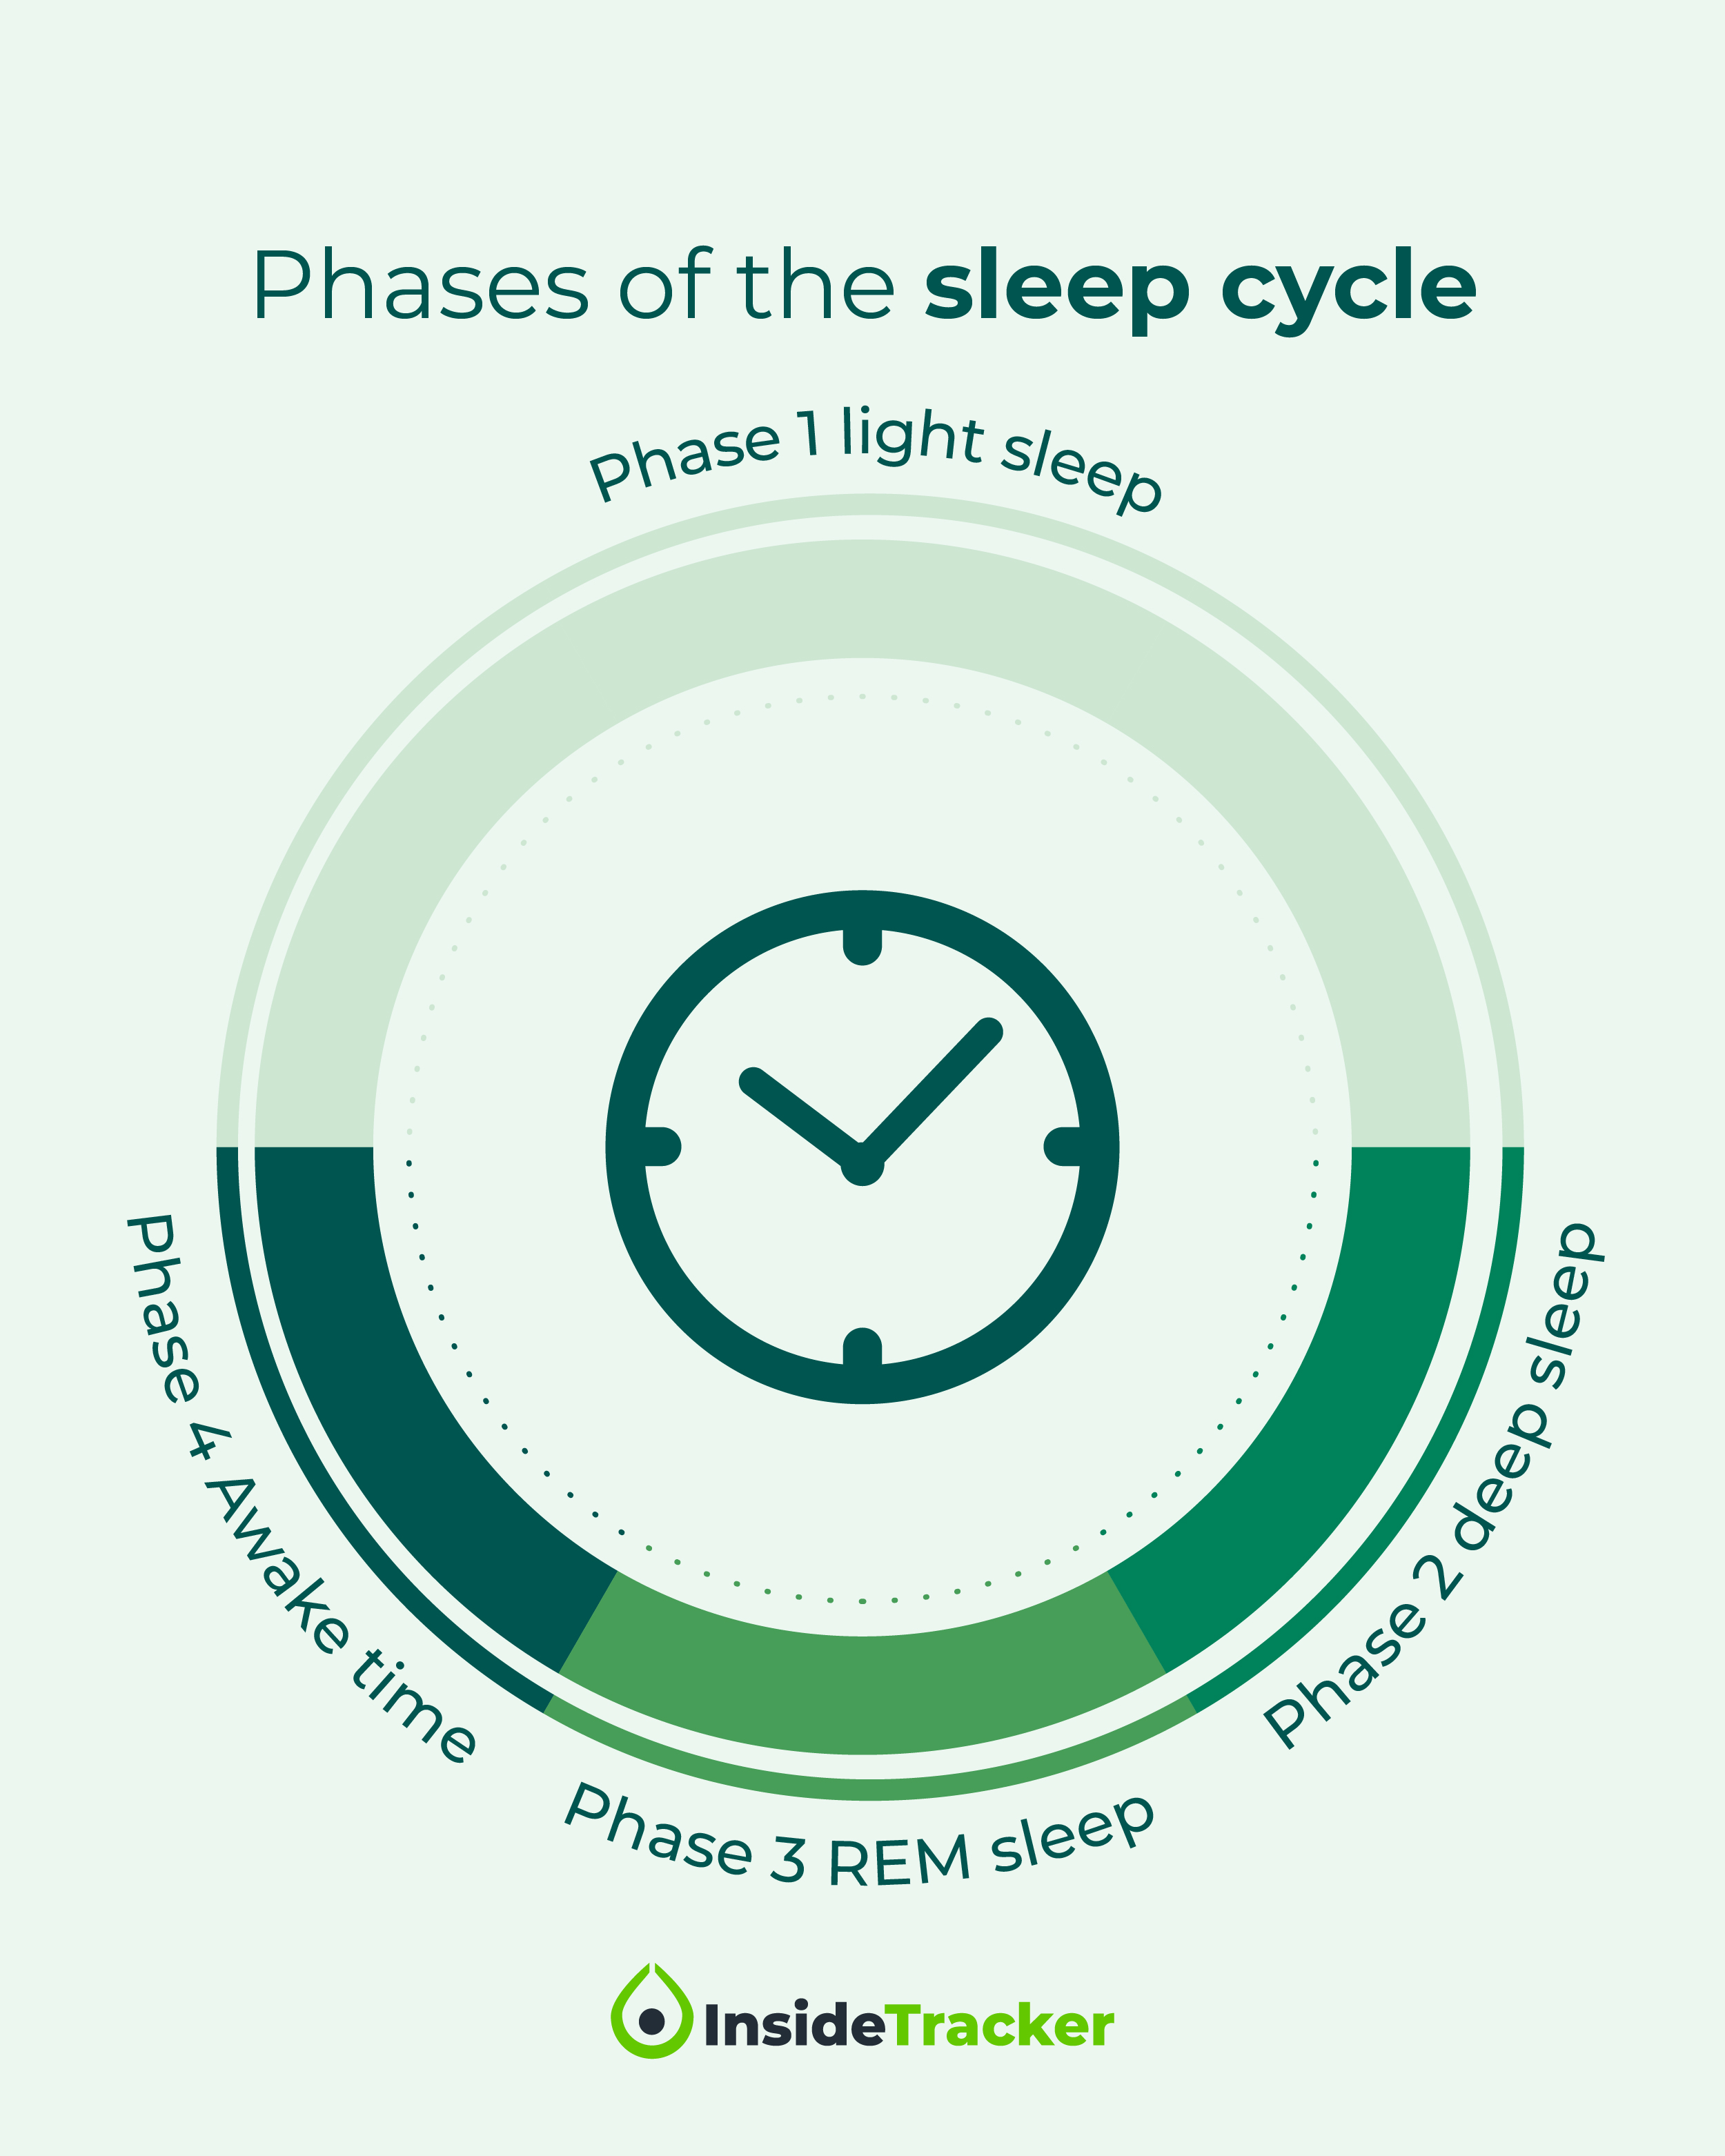 Phases of Sleep Cycle_IG Post 1_1200x1500_04.22